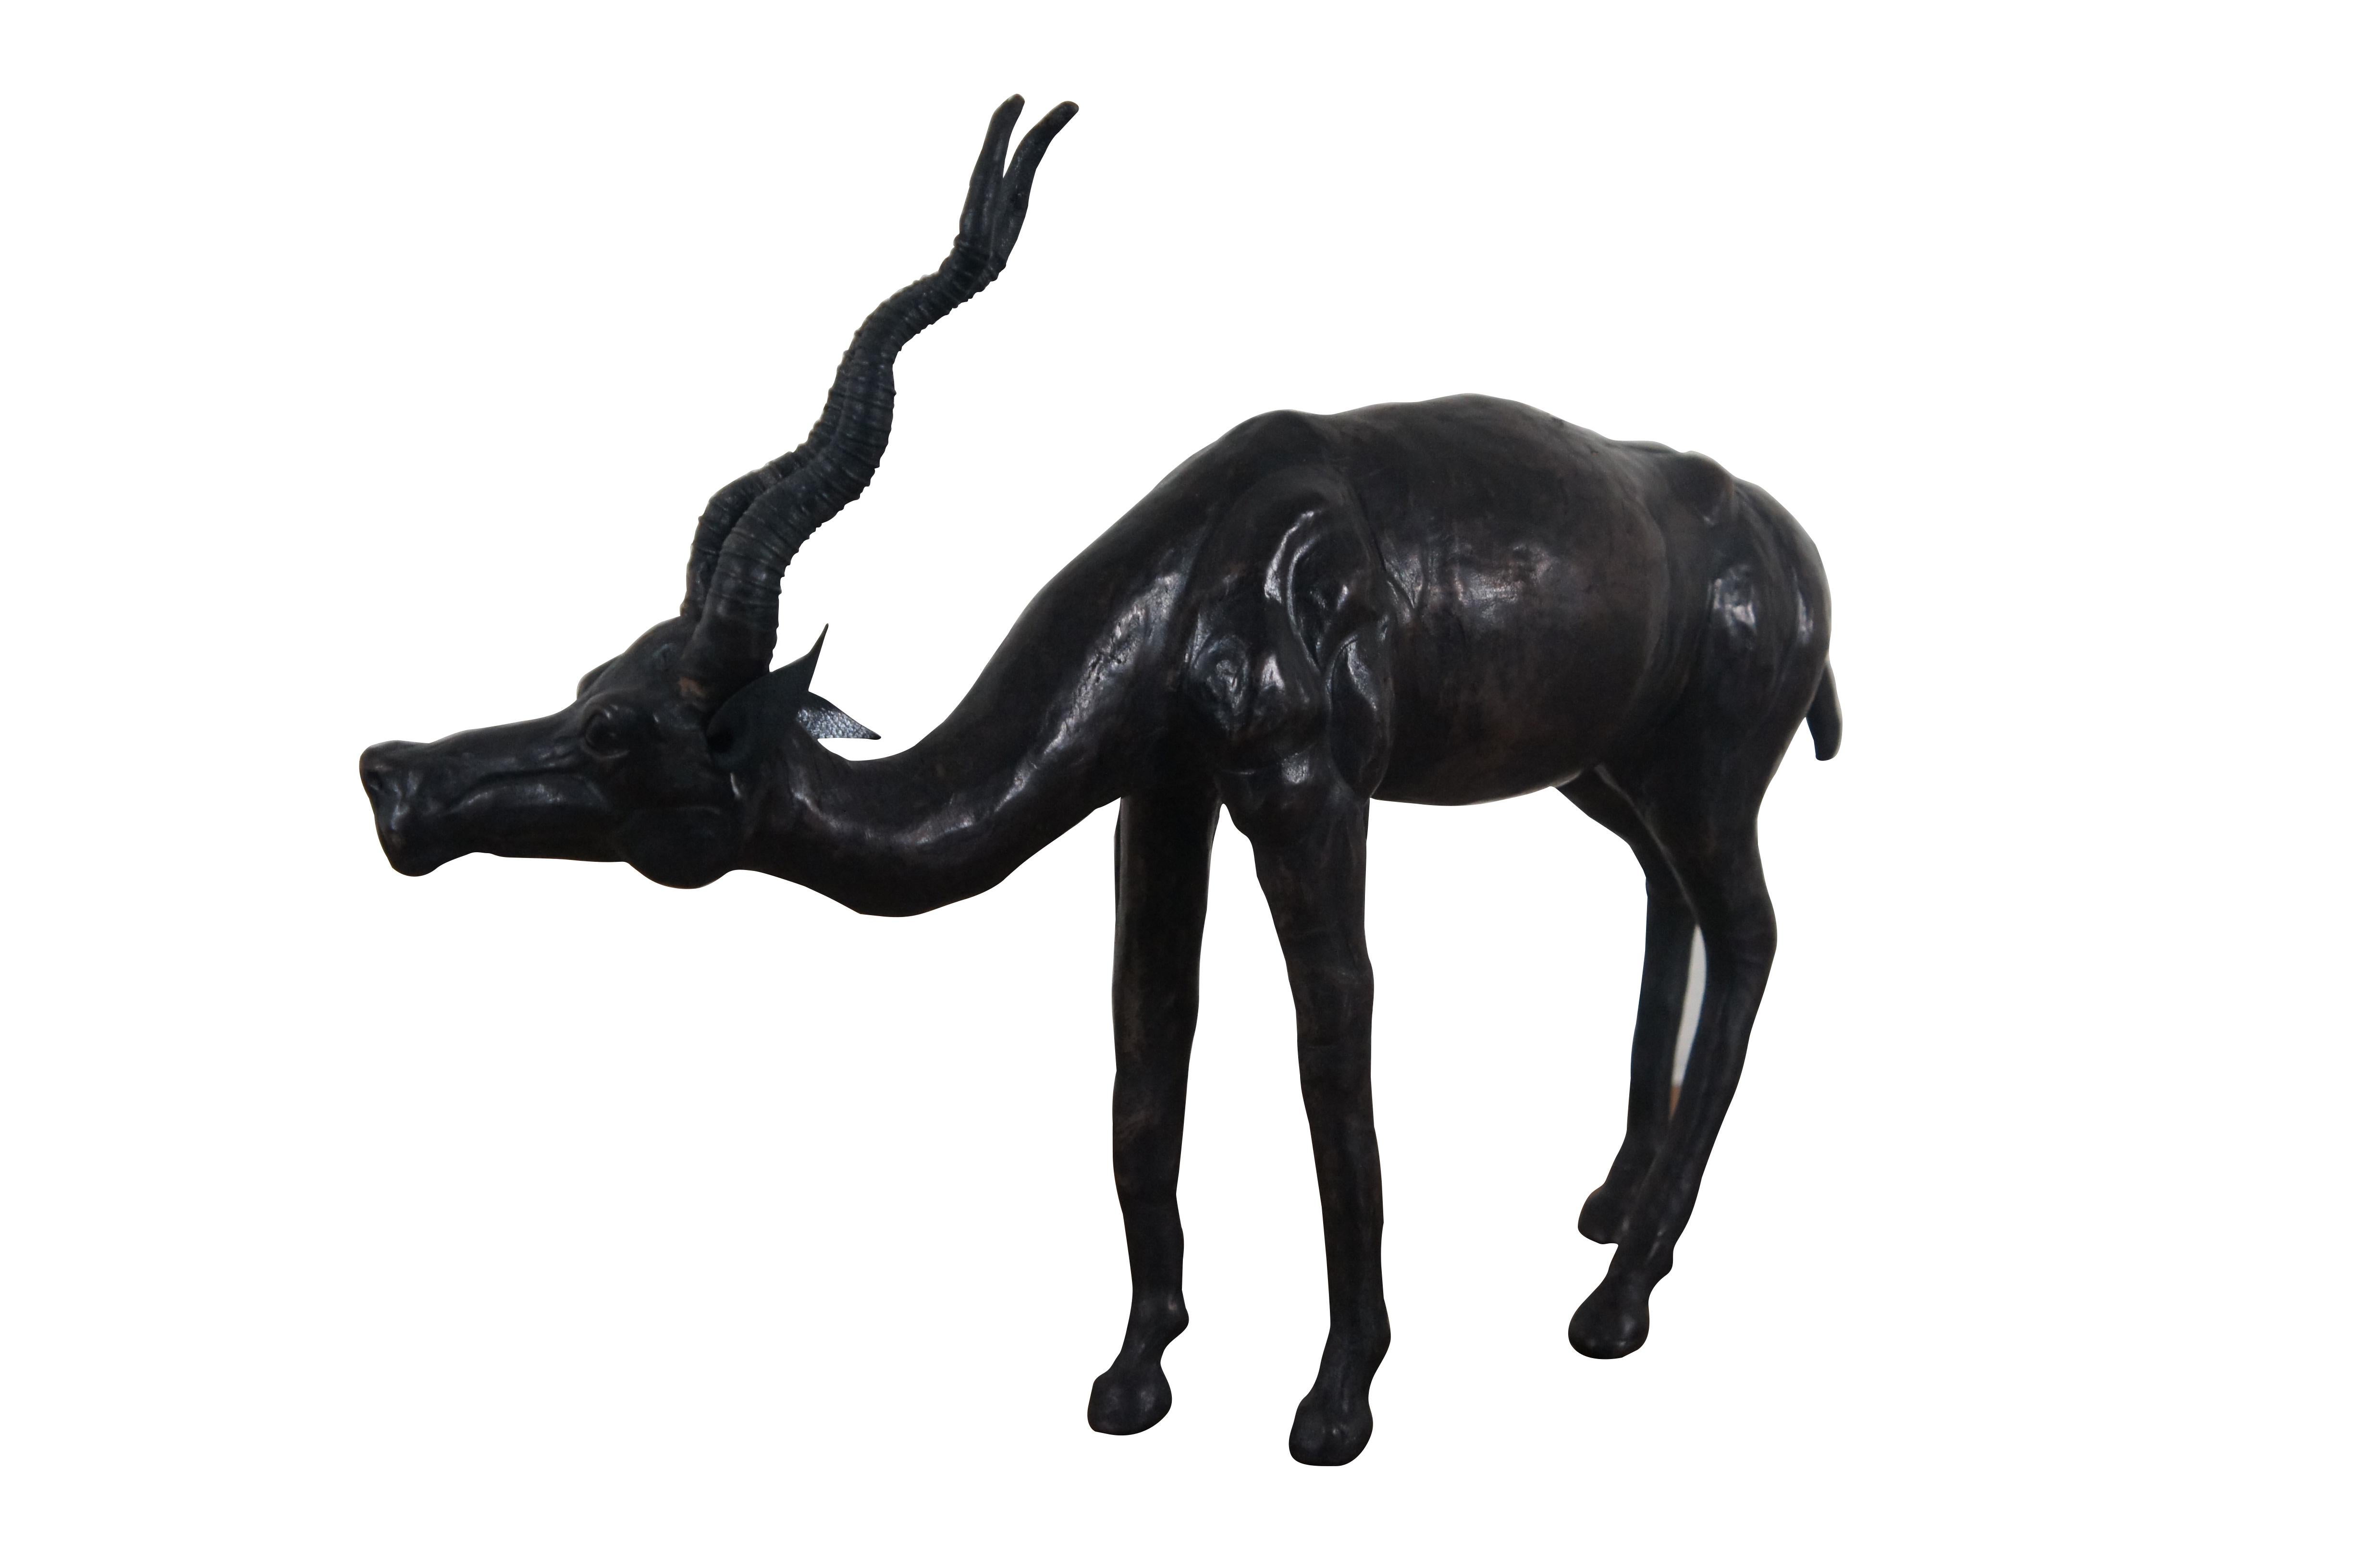 Außergewöhnliche lederumwickelte Tierskulptur / Figurine in Form einer afrikanischen Antilope / Gazelle mit spiralförmigen Hörnern aus der Mitte des 20.

Abmessungen:
14,75